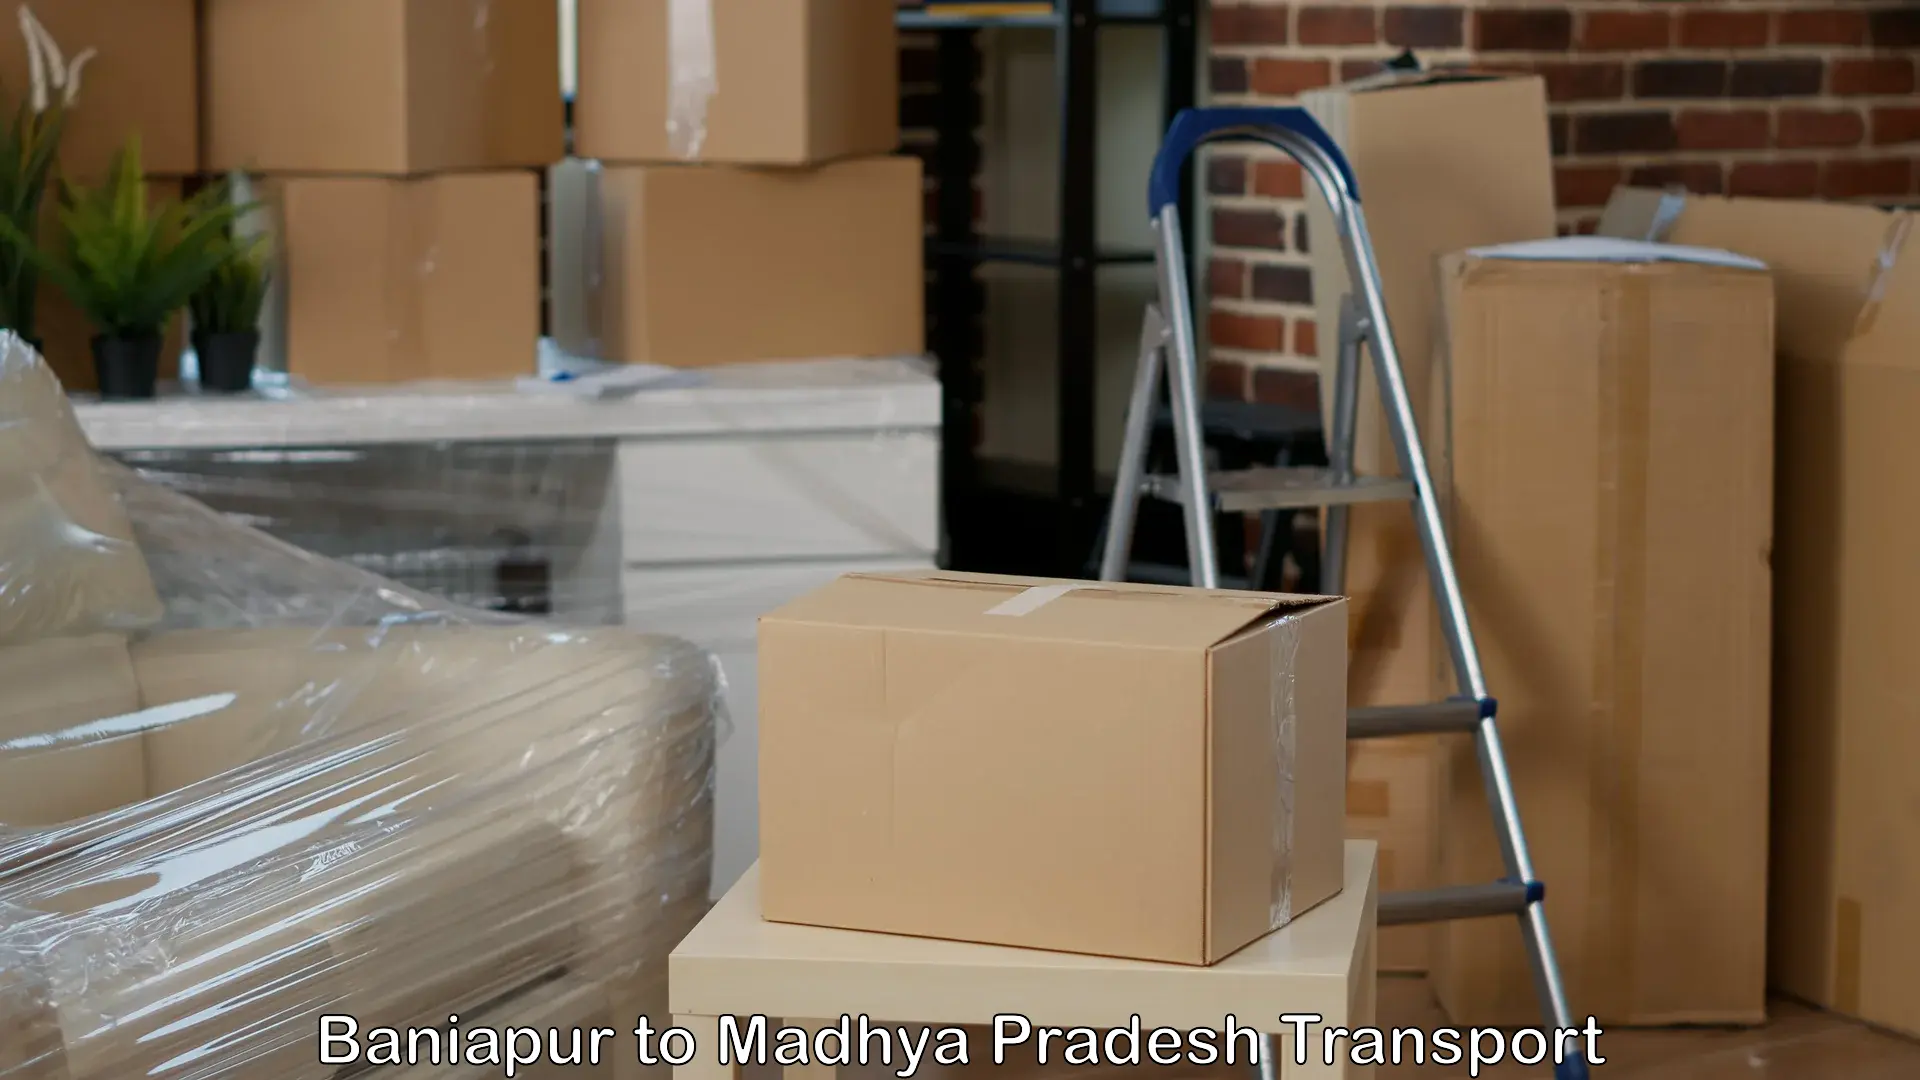 Shipping partner Baniapur to Balaghat